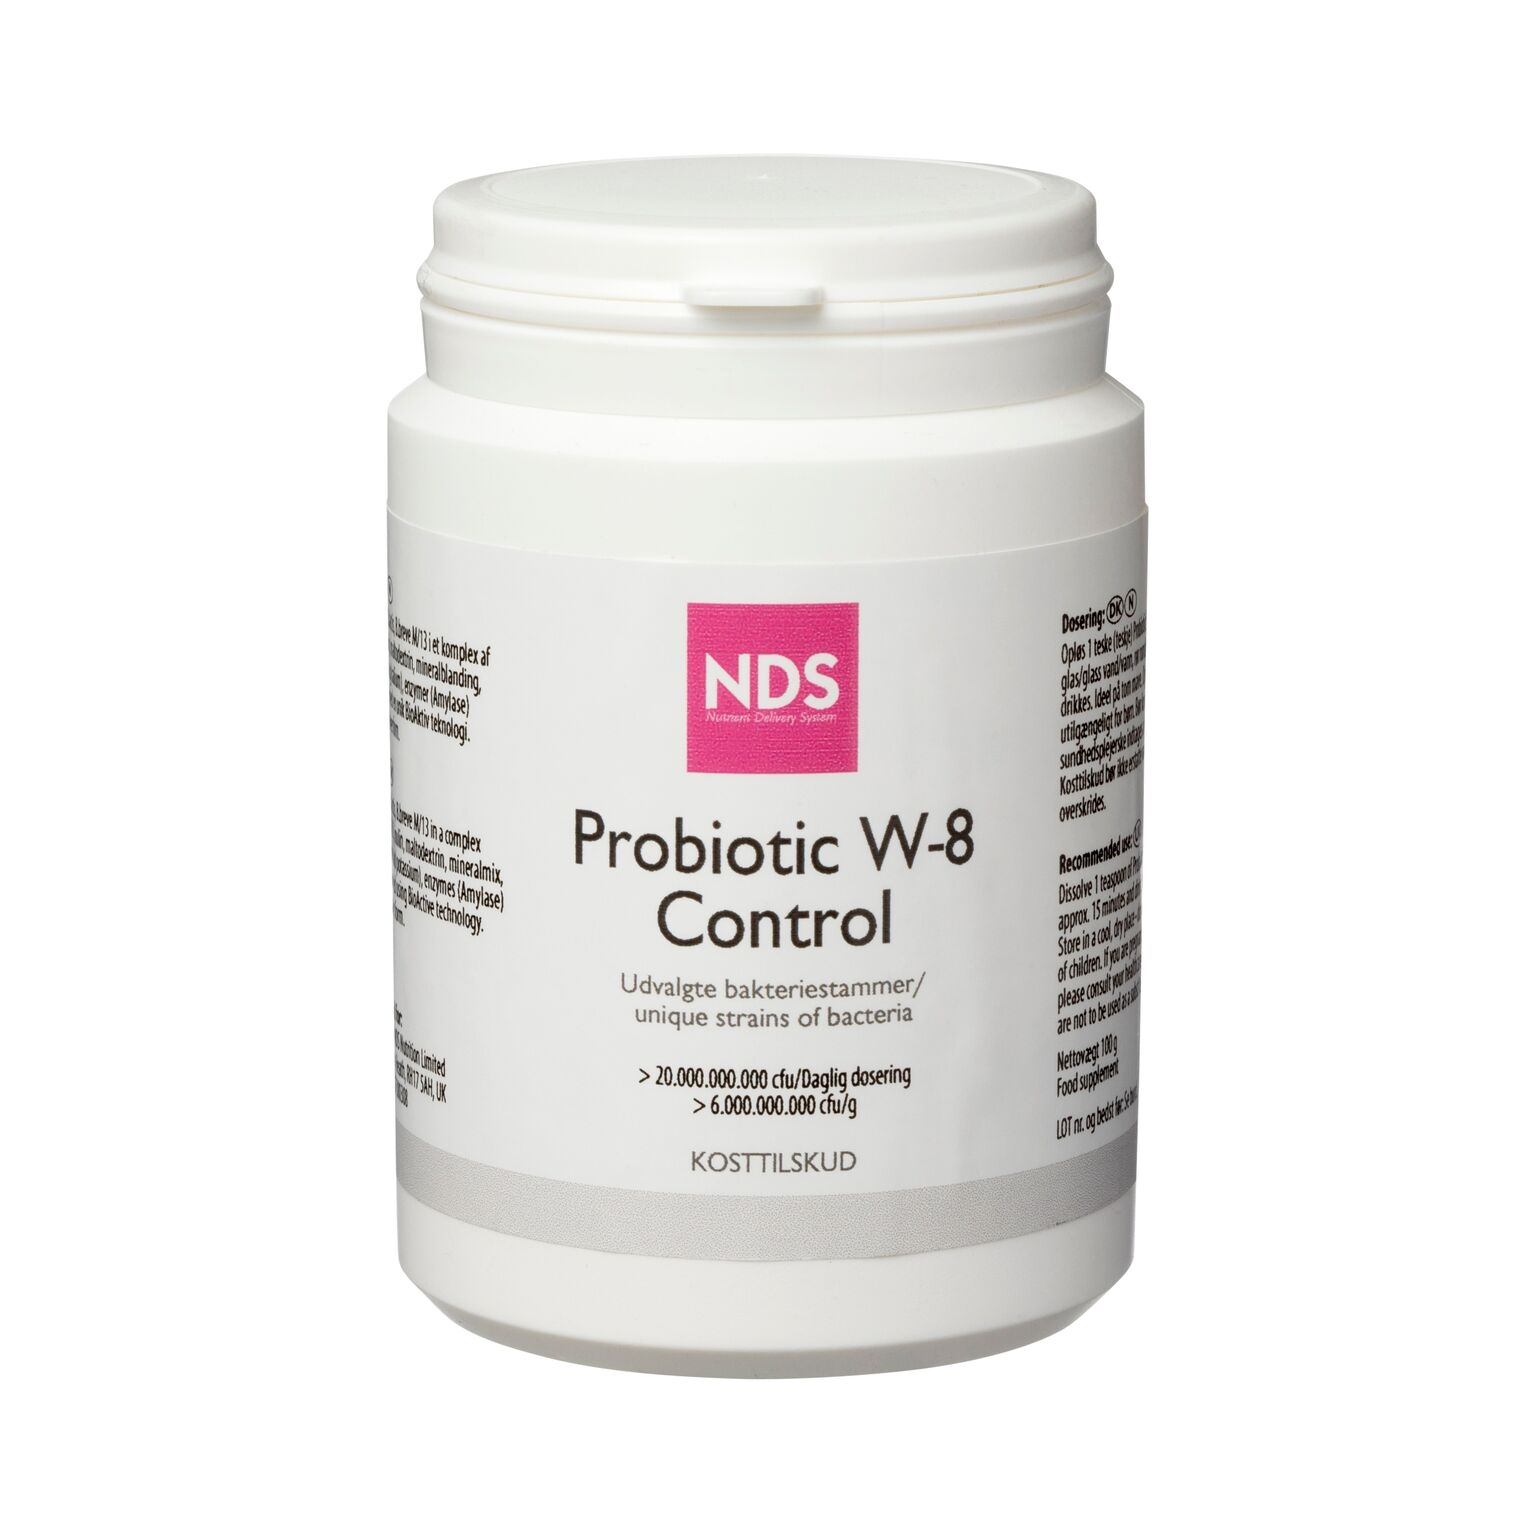 Billede af NDS Probiotic W-8 Control 100 g. hos Well.dk